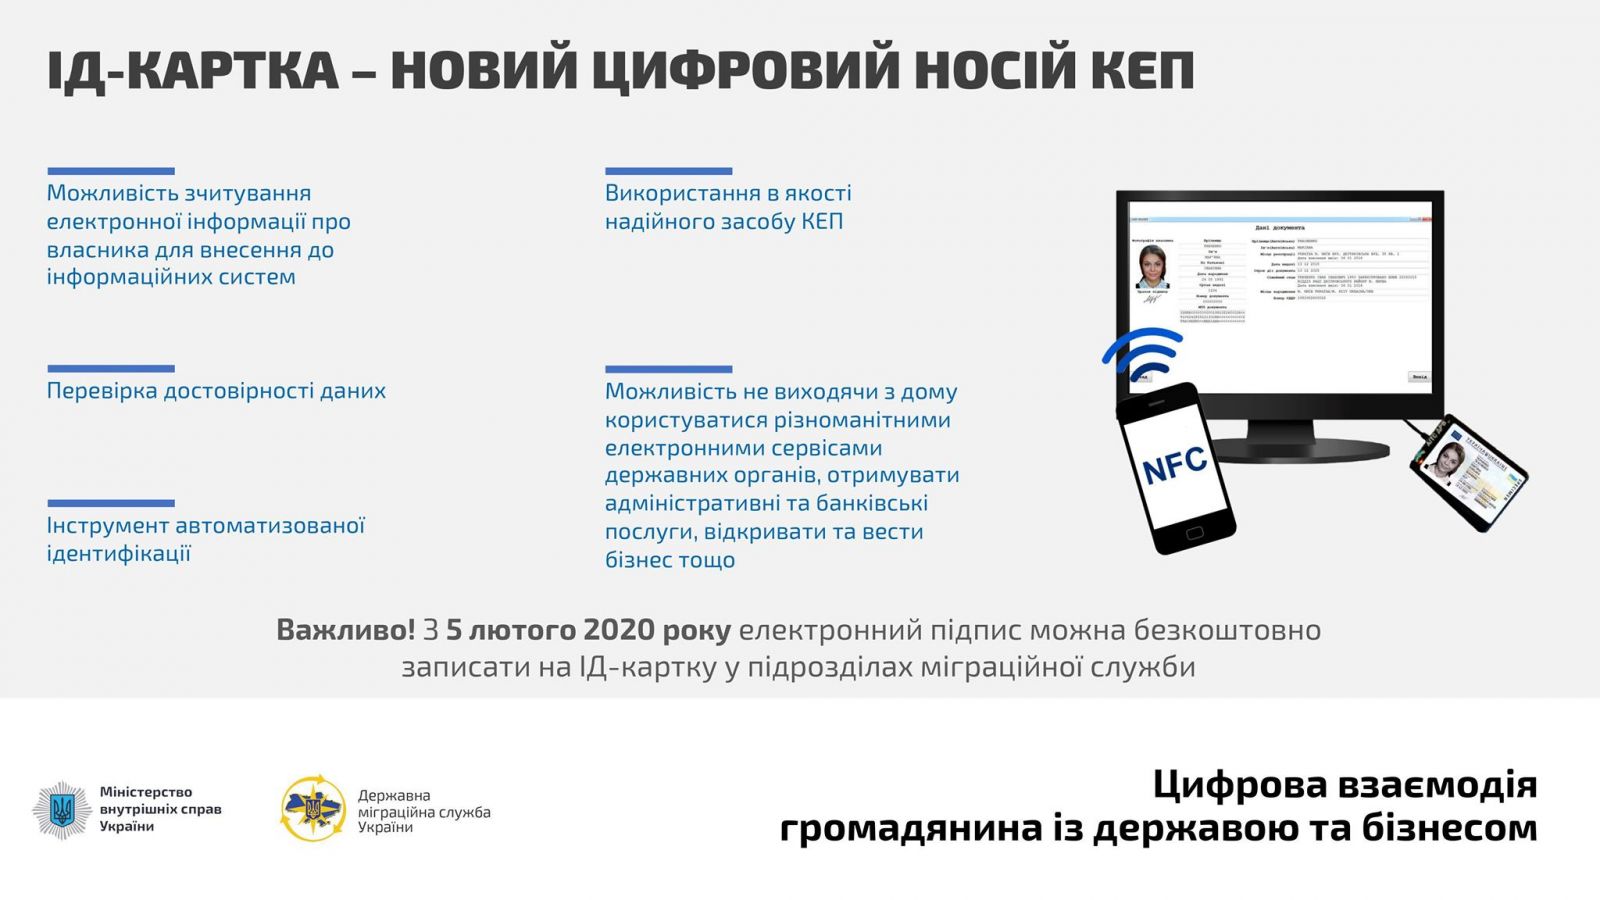 Электронную подпись на ID-карту с сегодняшнего дня можно получить в Украине. Инфографика: МВД